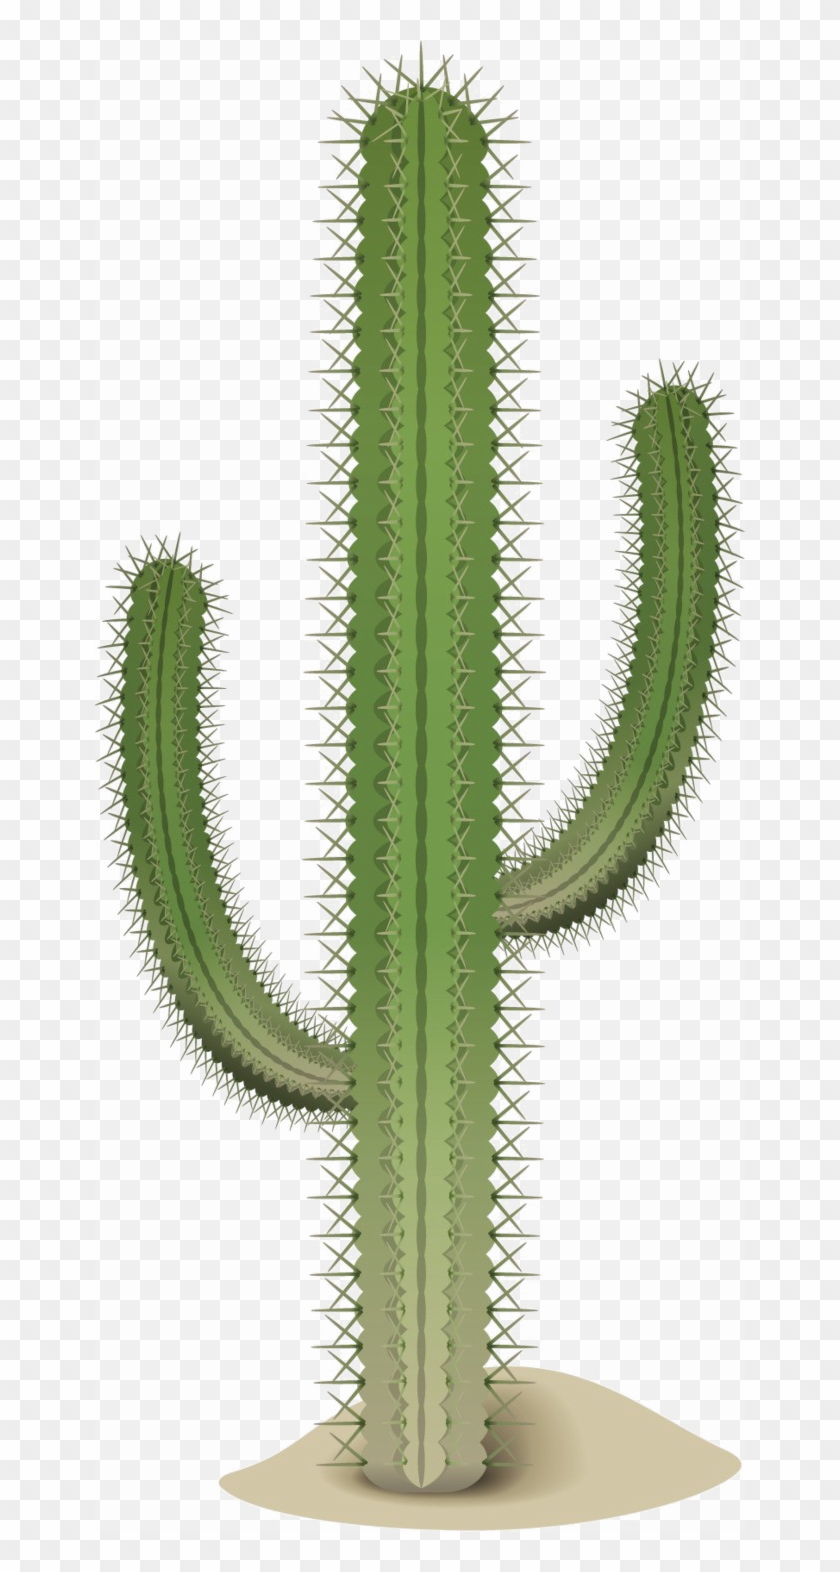 Saguaro Cactus Transparent Image - Acanthocereus Tetragonus Clipart #4799669